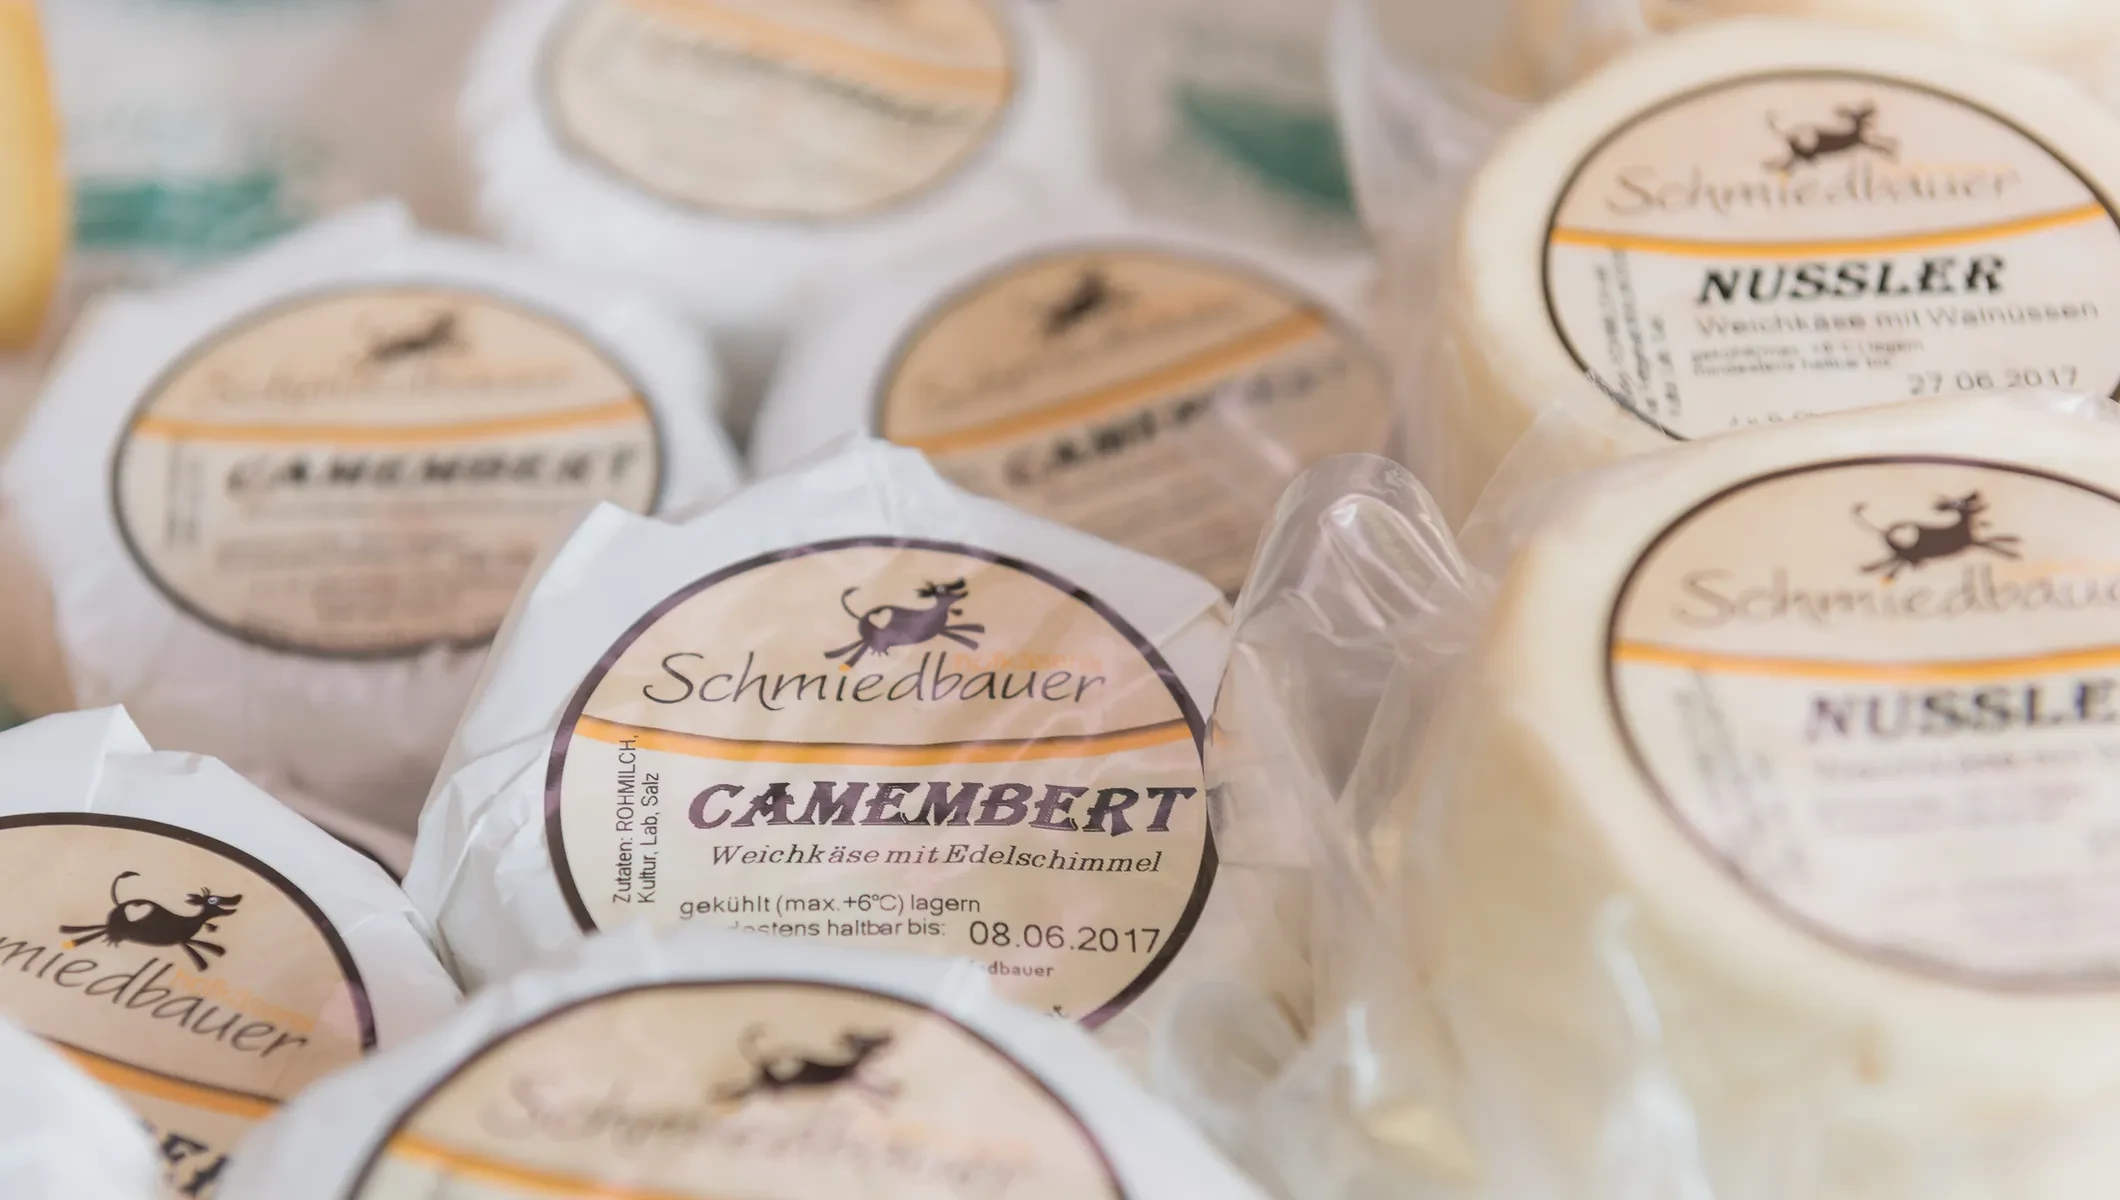 Schmiedbauer-Camembert